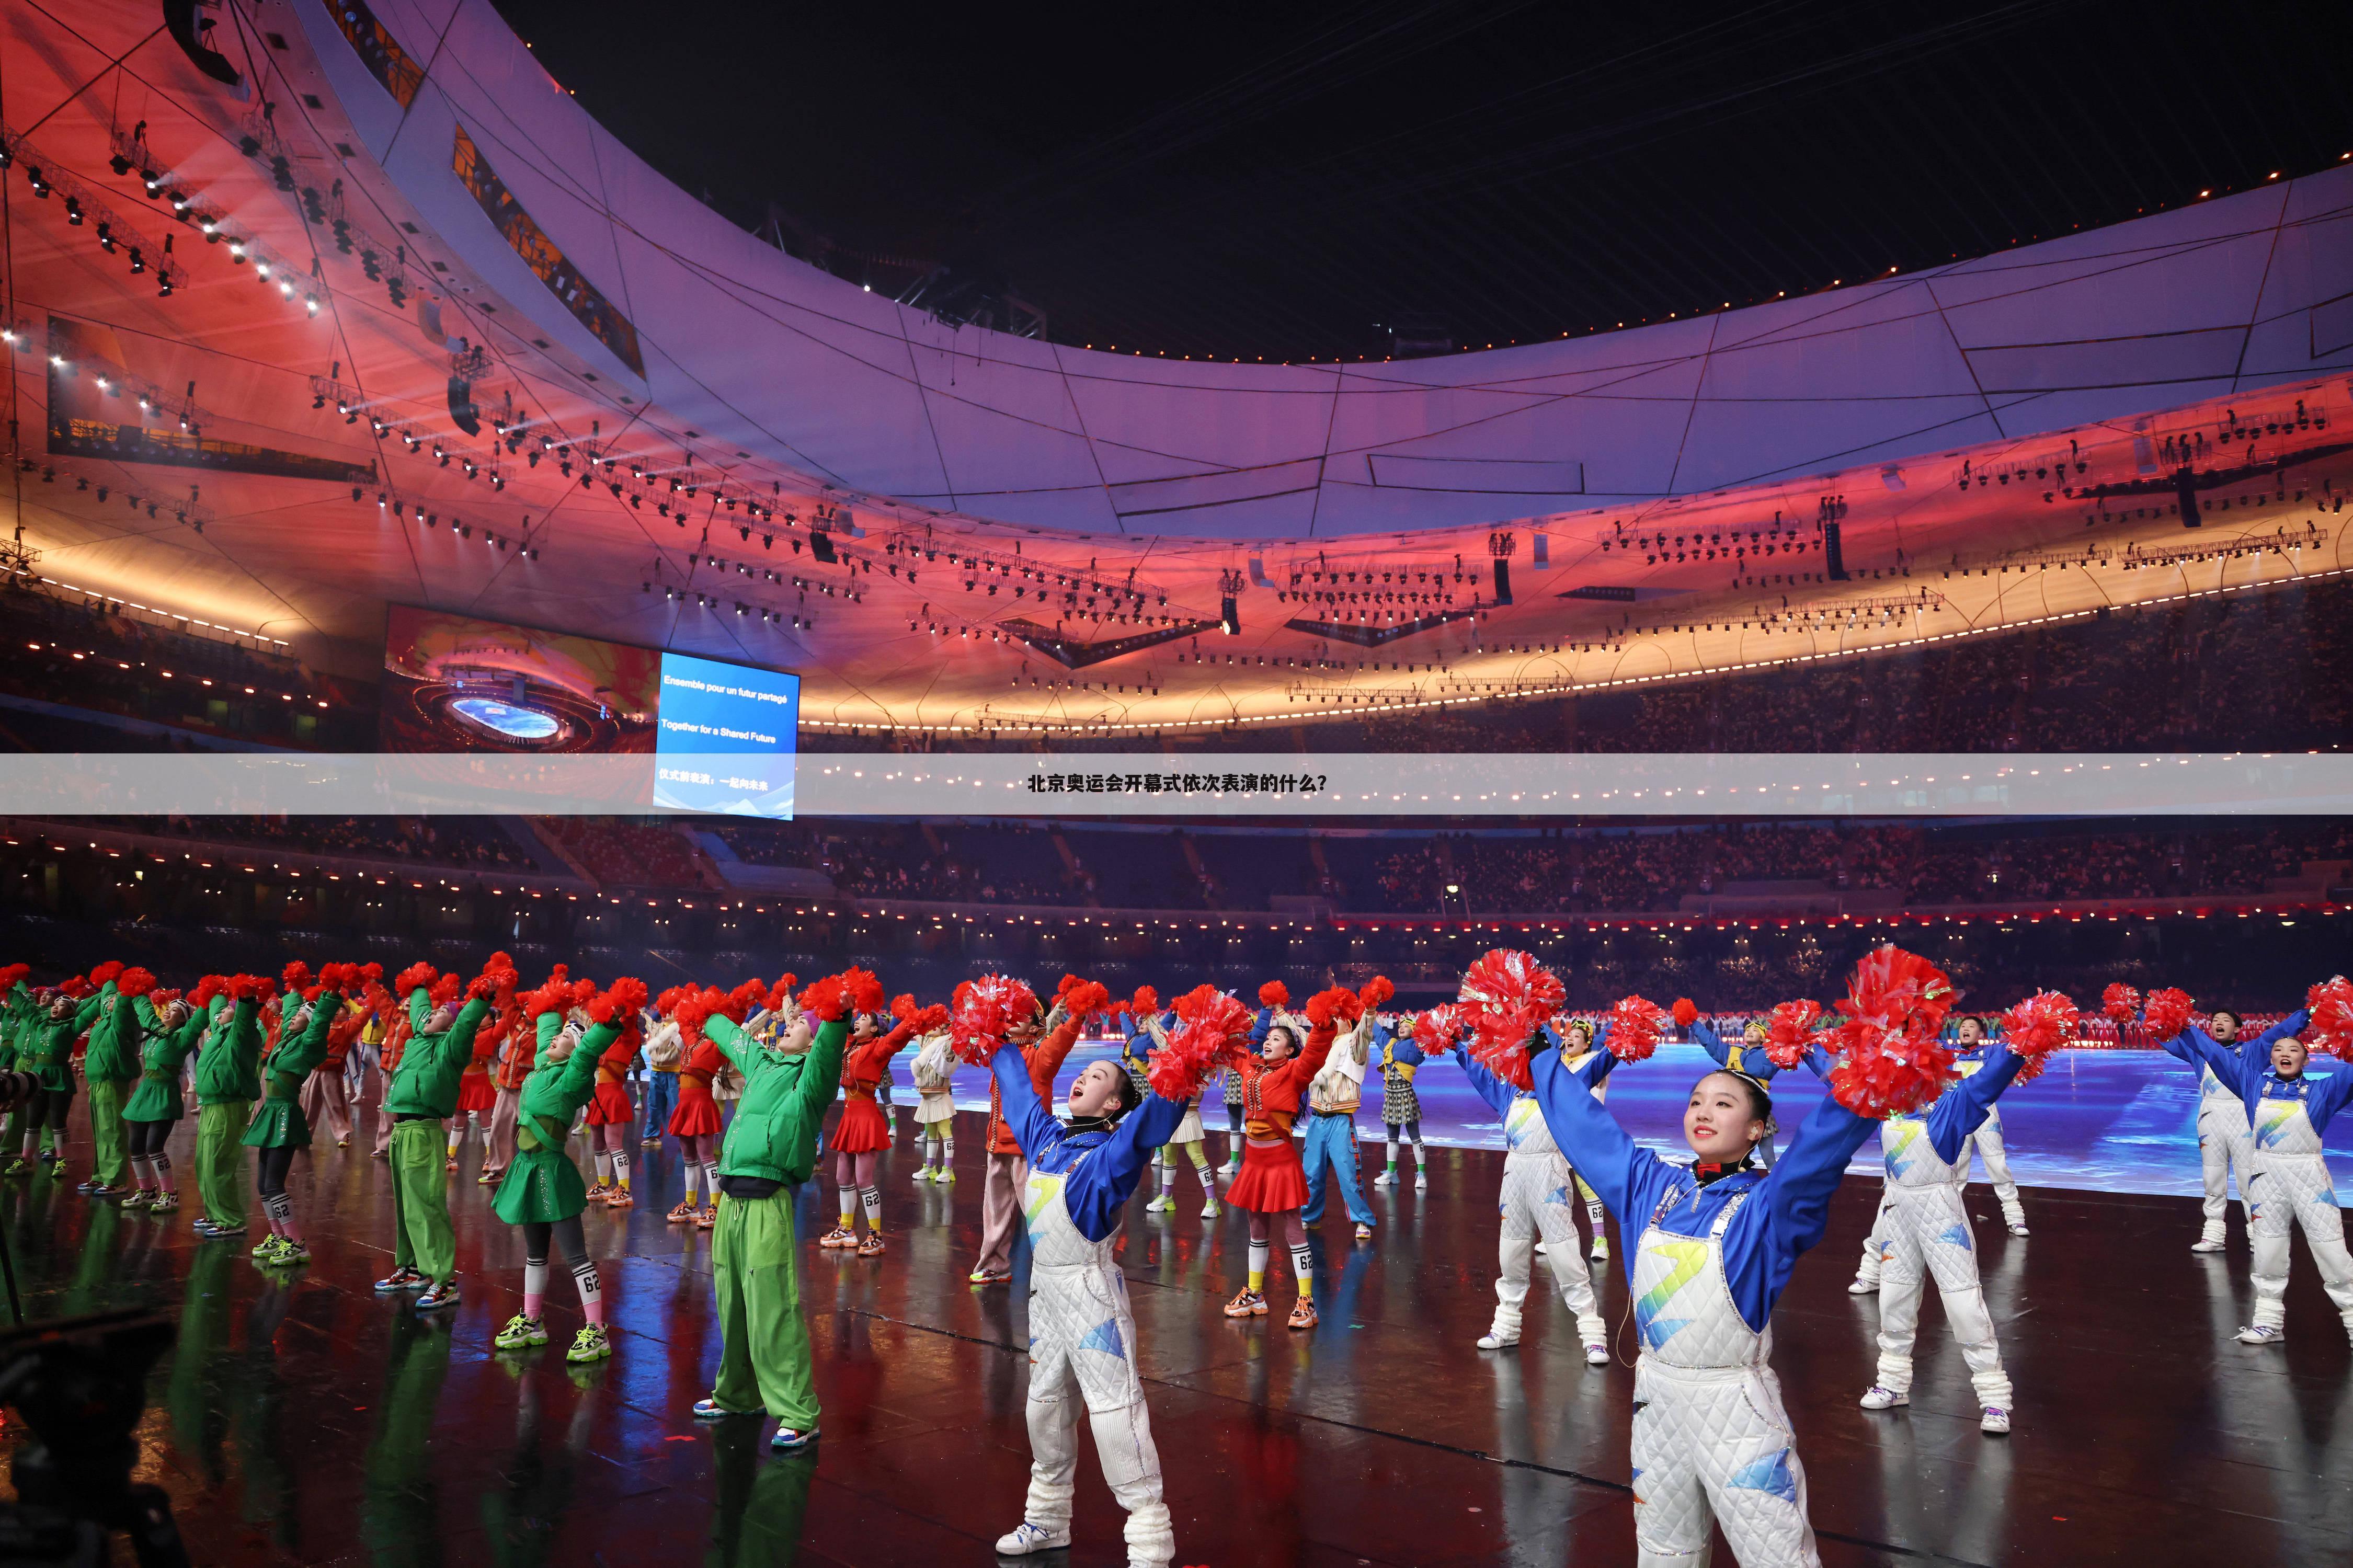 【北京奥运会开幕式】北京奥运会开幕式活字印刷表演